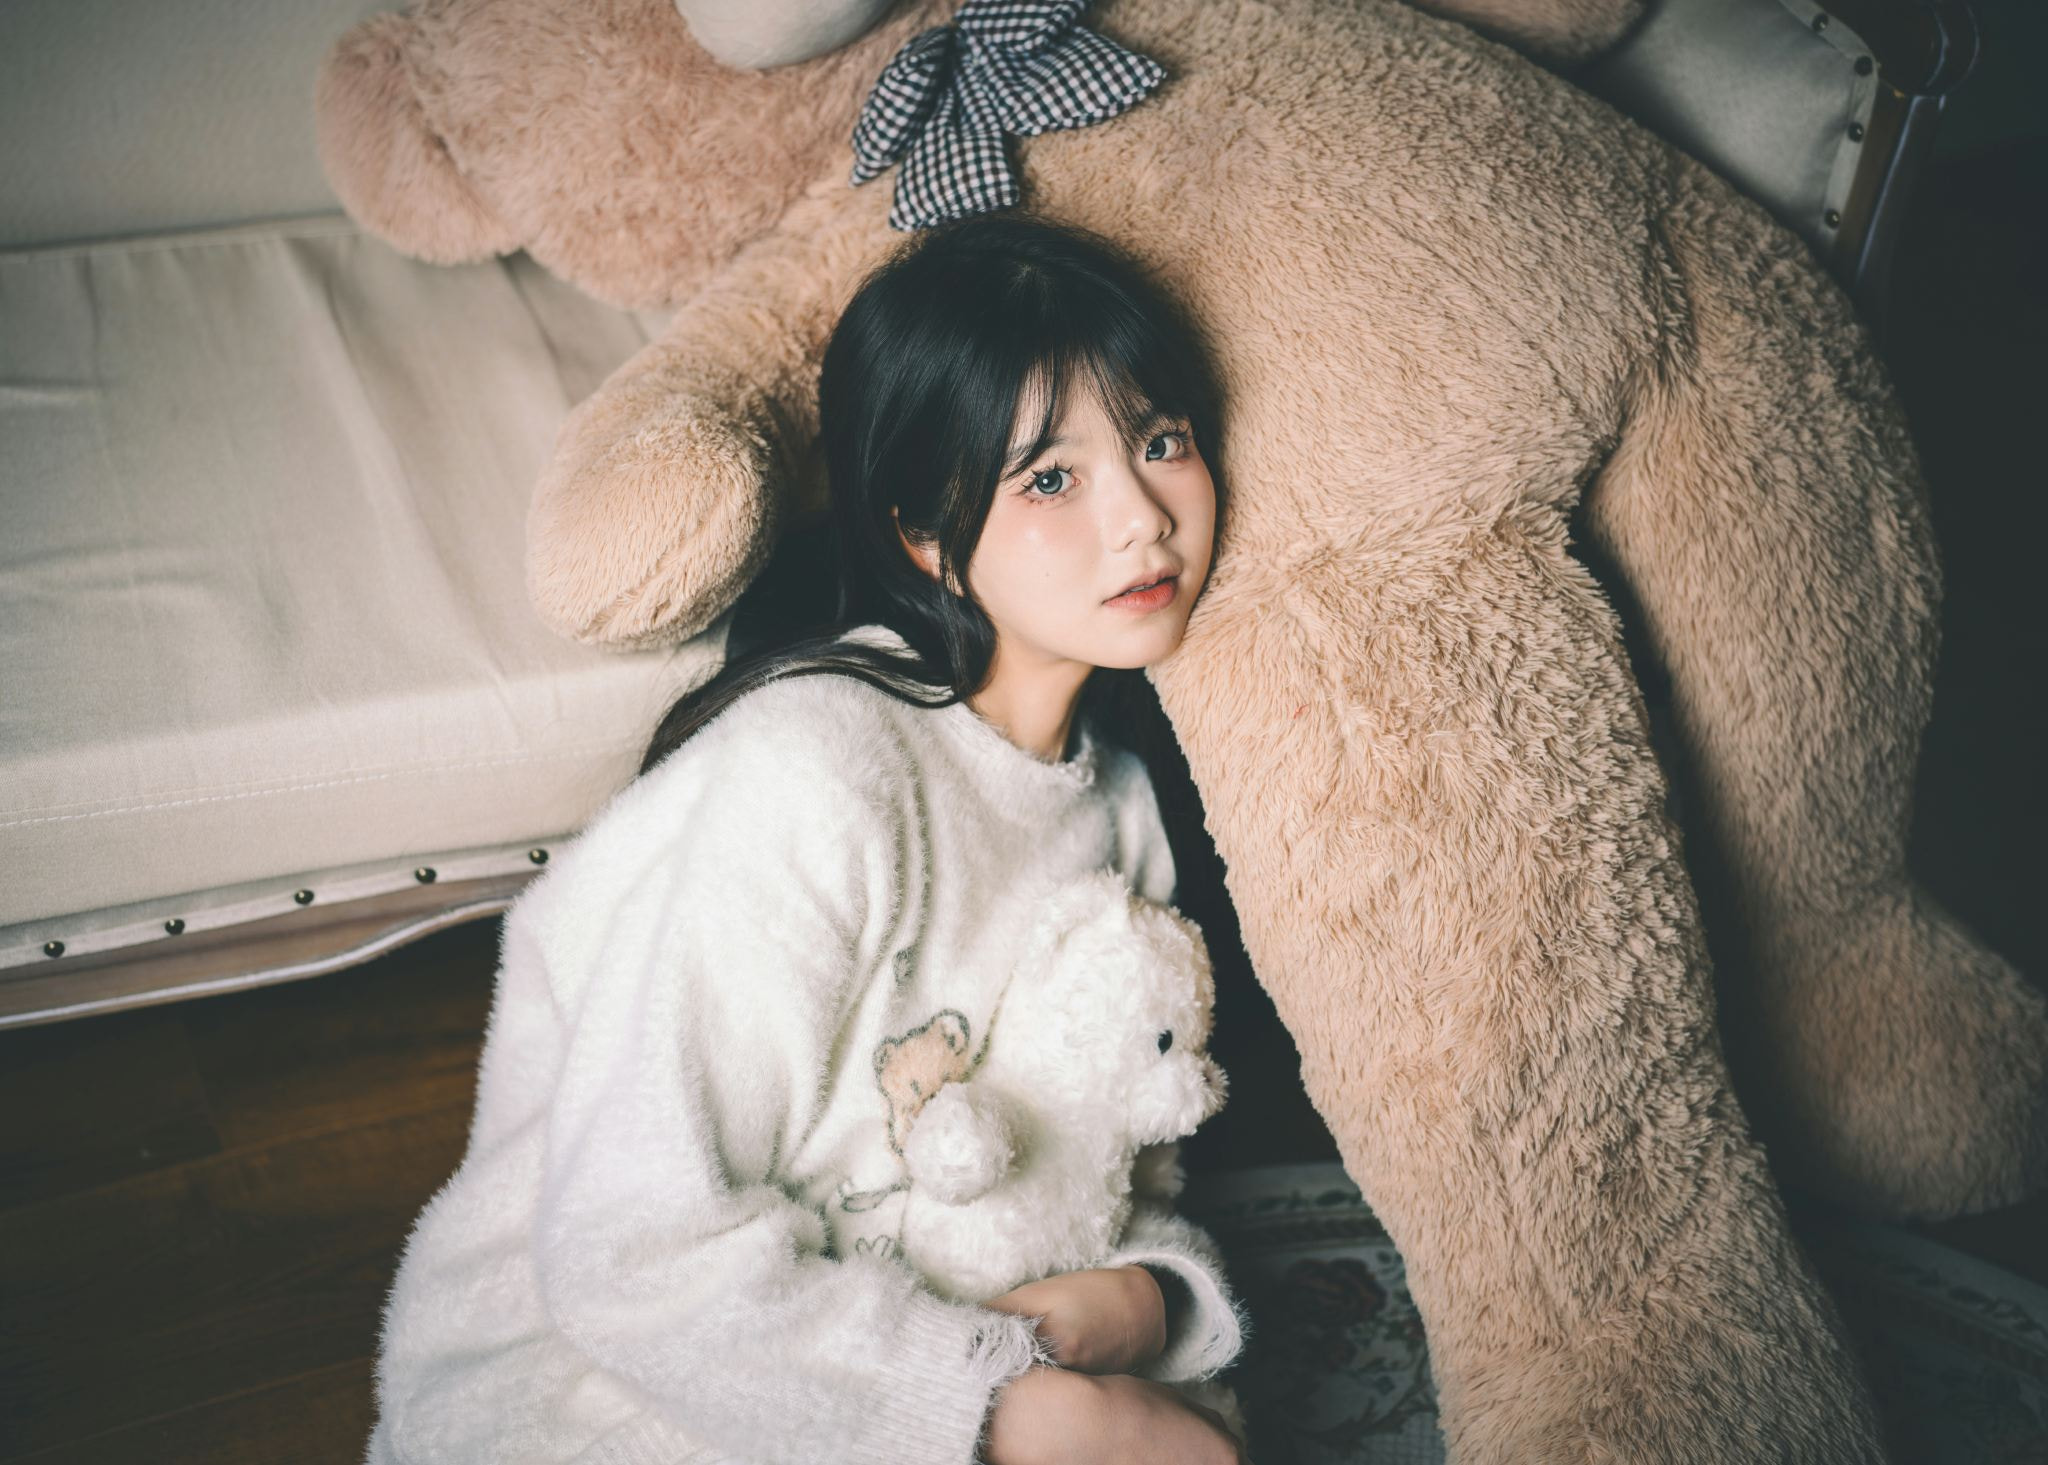 Qin Xiaoqiang Women Asian Dark Hair Sweater Teddy Bears 2048x1465